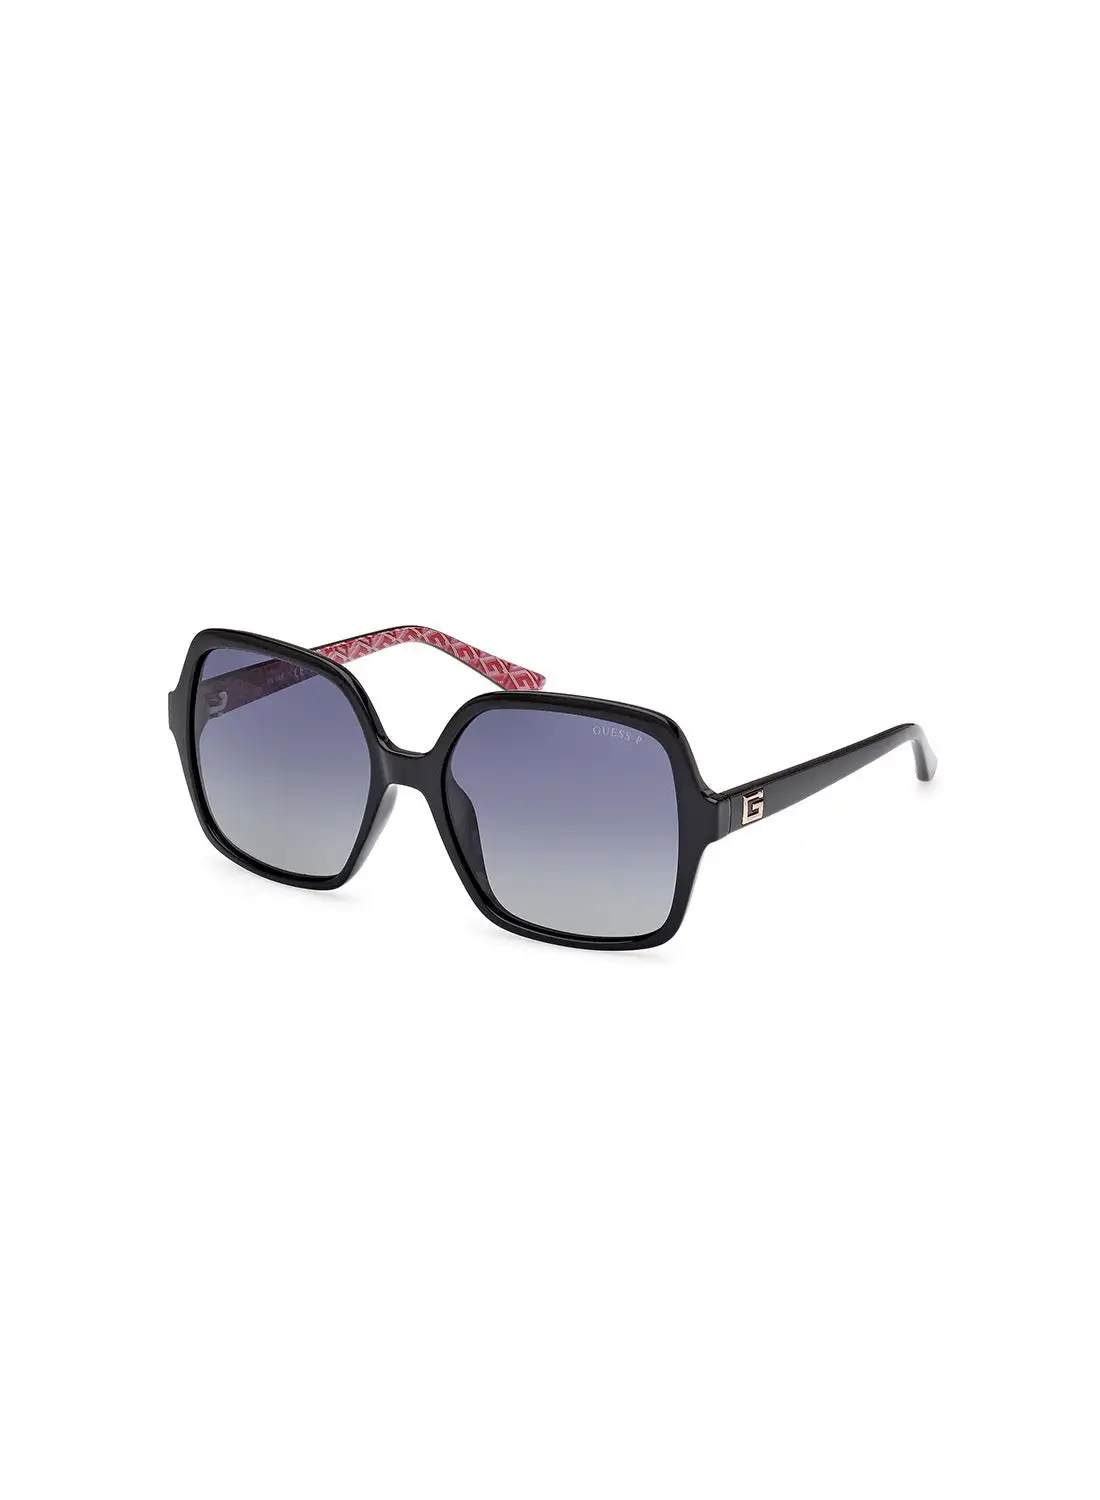 GUESS Women's Polarized Square Sunglasses - GU7921-H01D57 - Lens Size: 57 Mm